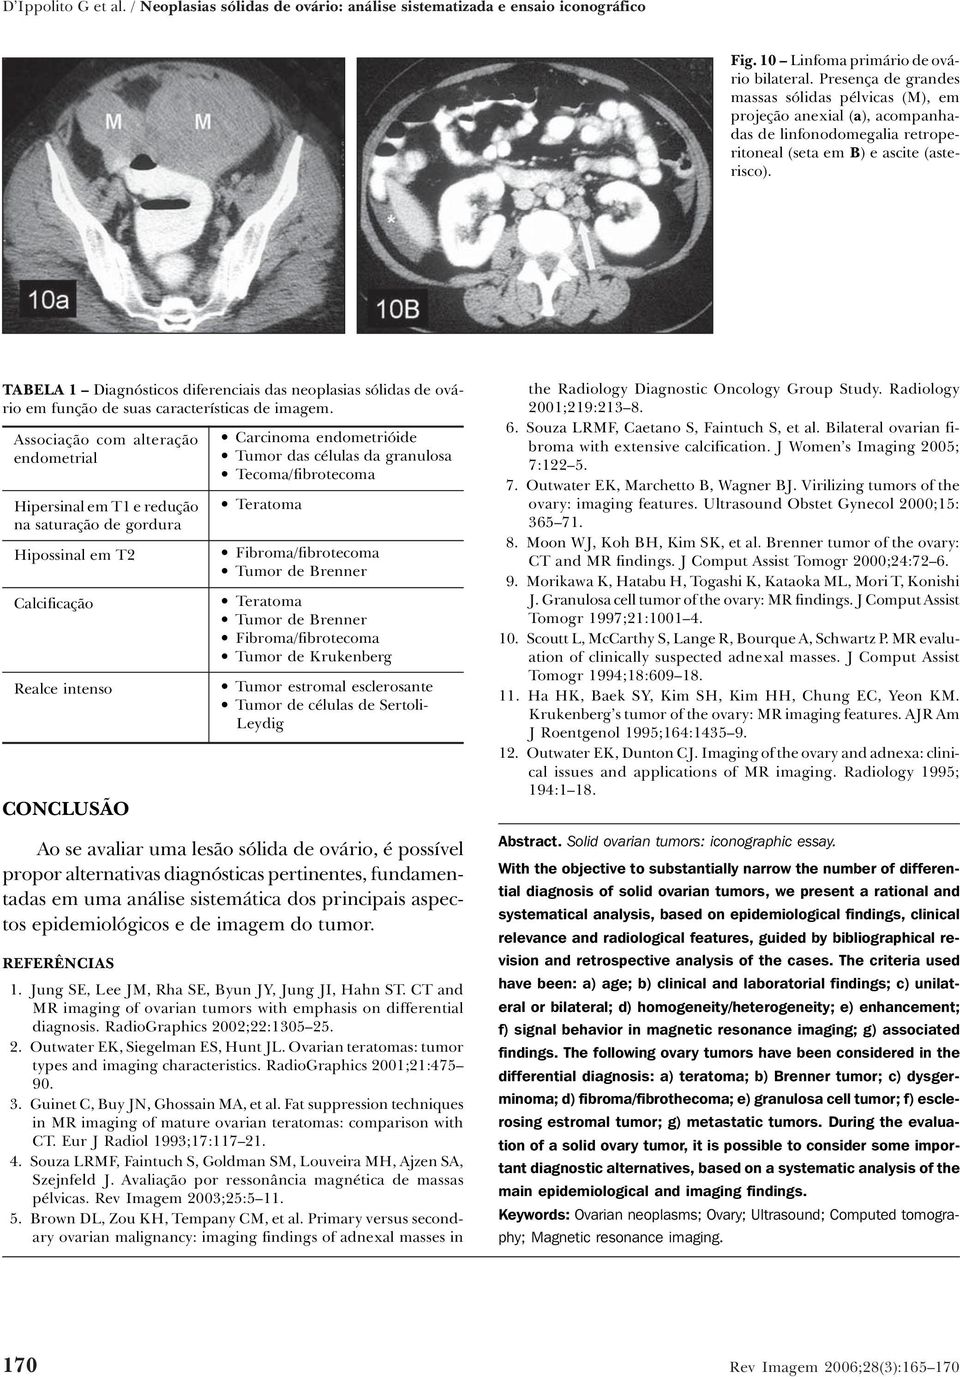 TABELA 1 Diagnósticos diferenciais das neoplasias sólidas de ovário em função de suas características de imagem.